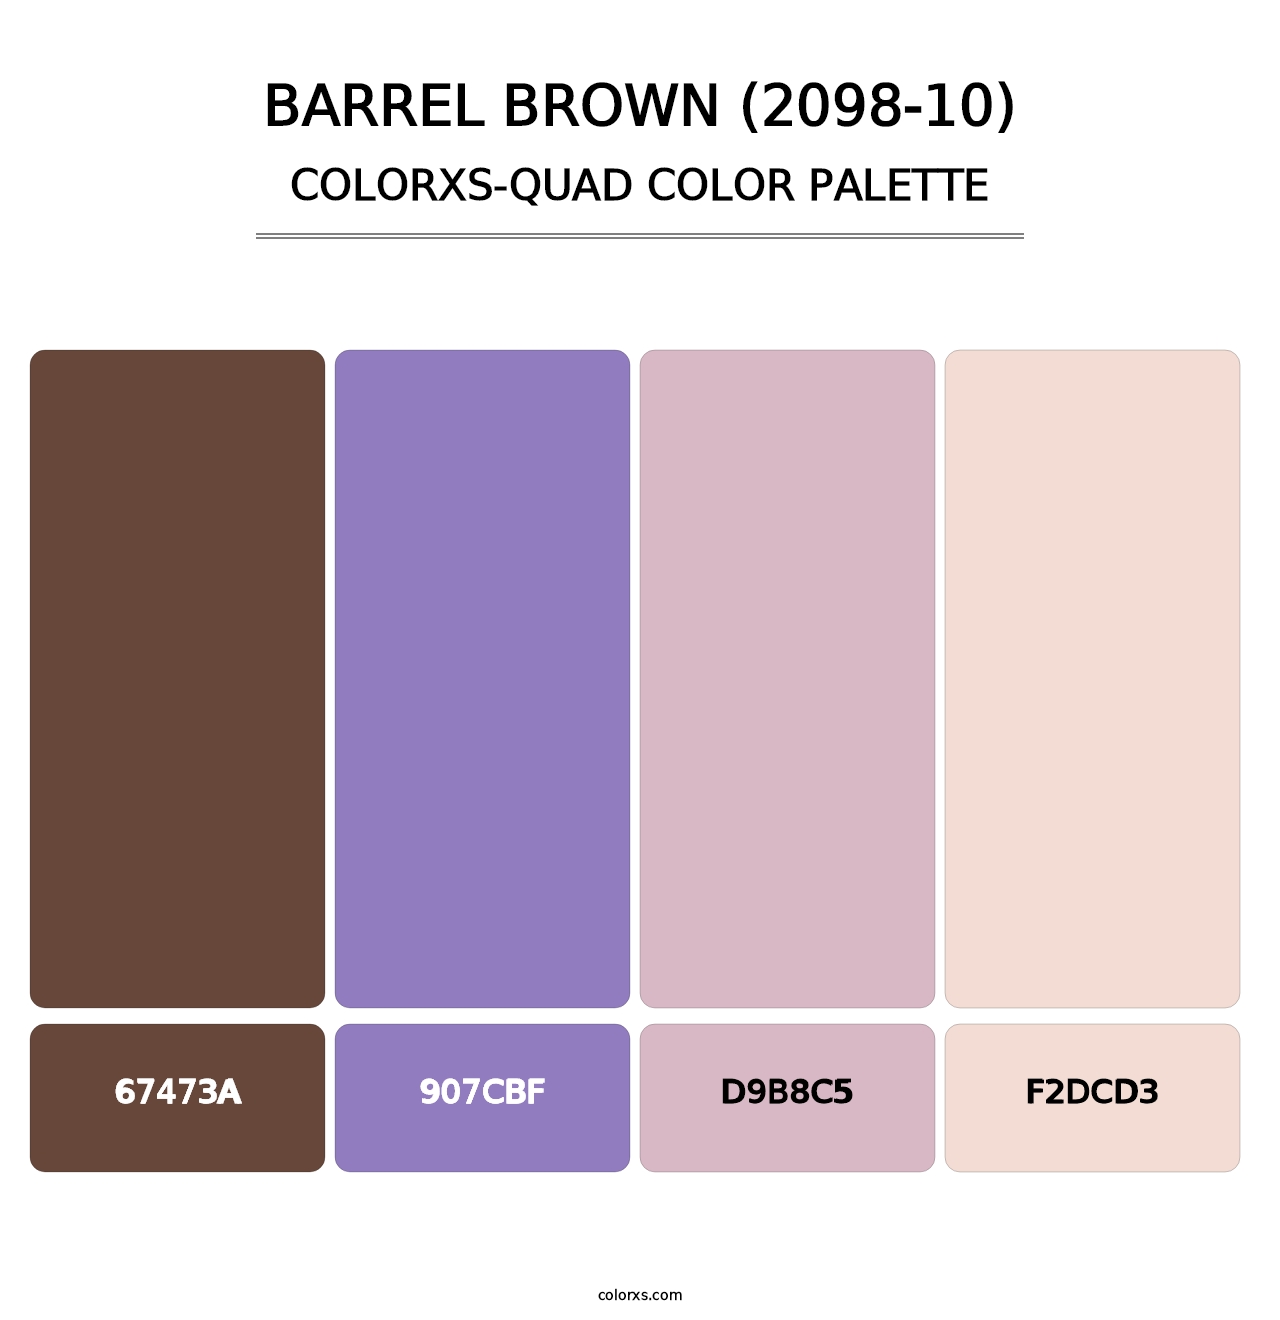 Barrel Brown (2098-10) - Colorxs Quad Palette